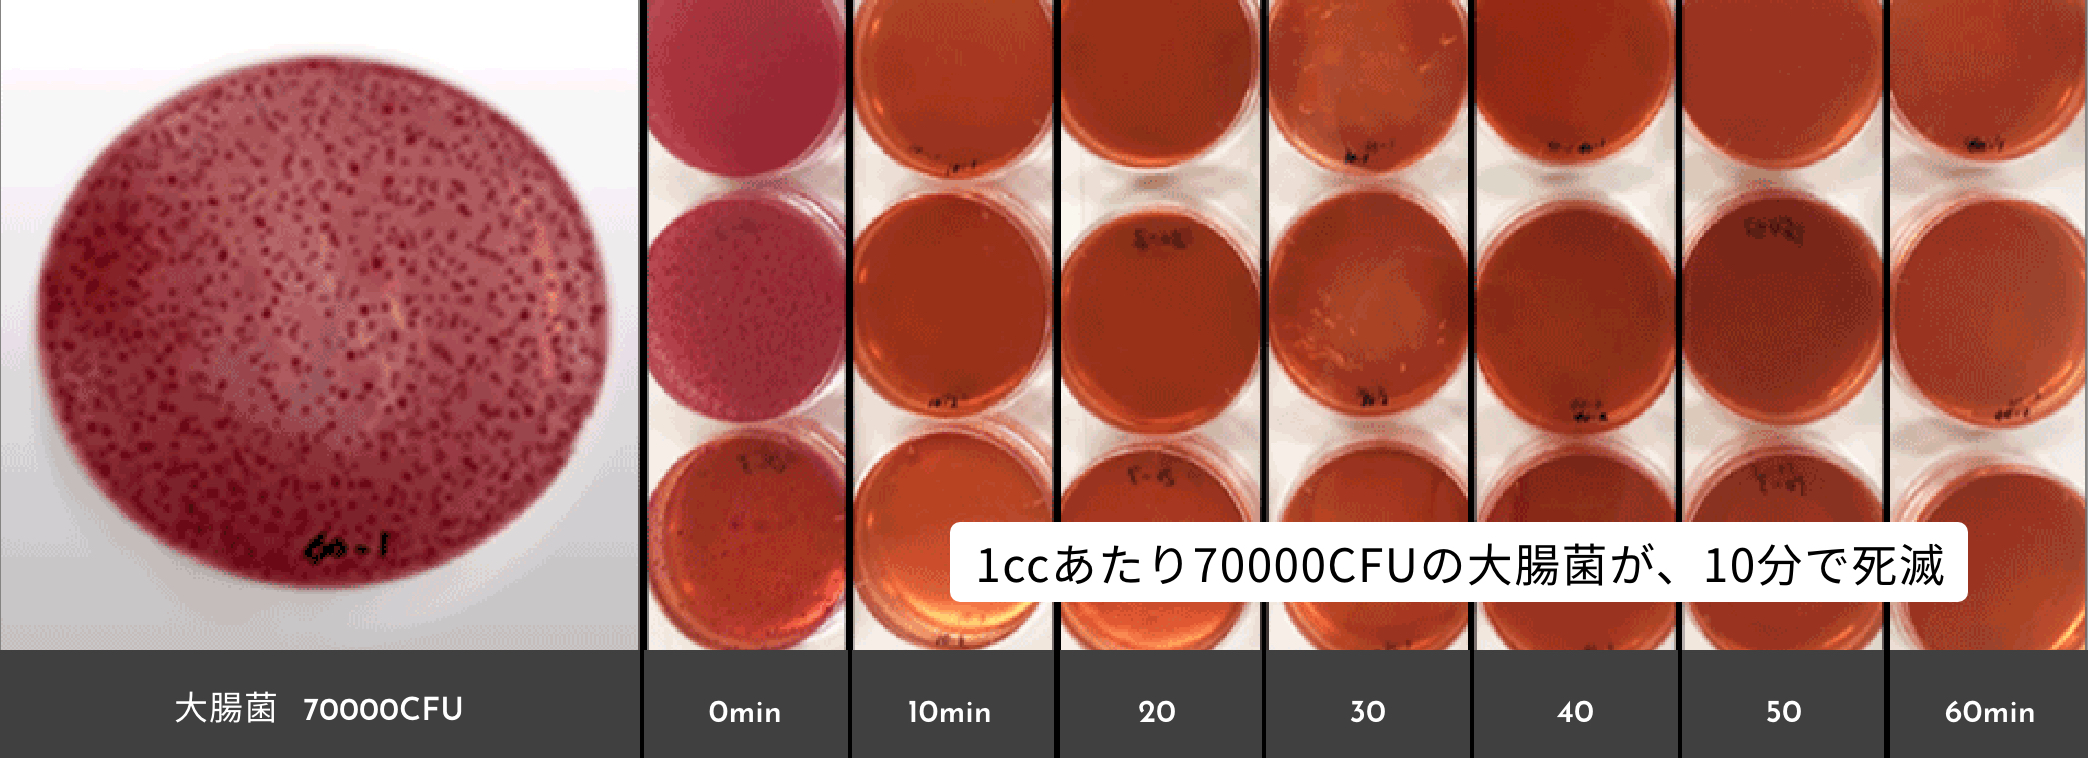 大腸菌を用いたマイクロイオニーの反応試験（減衰効果）